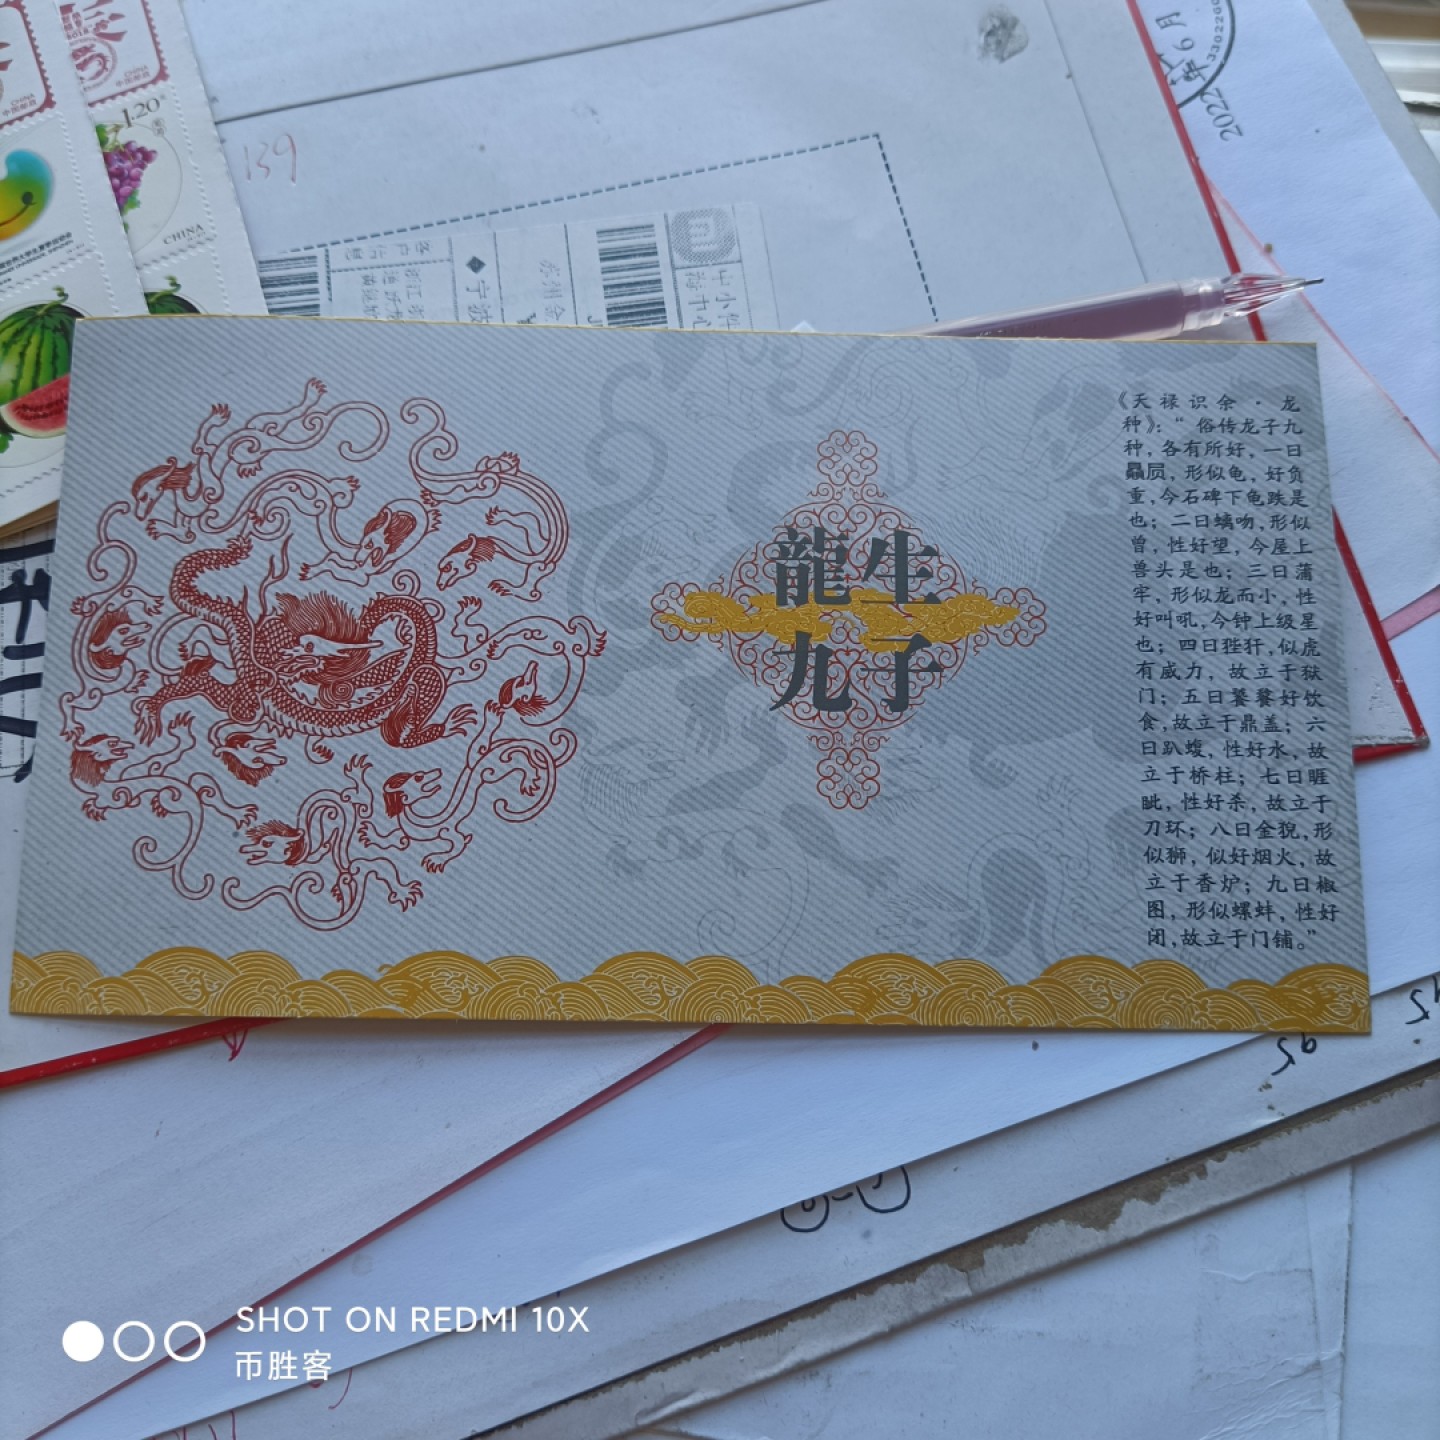 向喜欢漂亮邮票和中国文化的朋友寄一波明信片